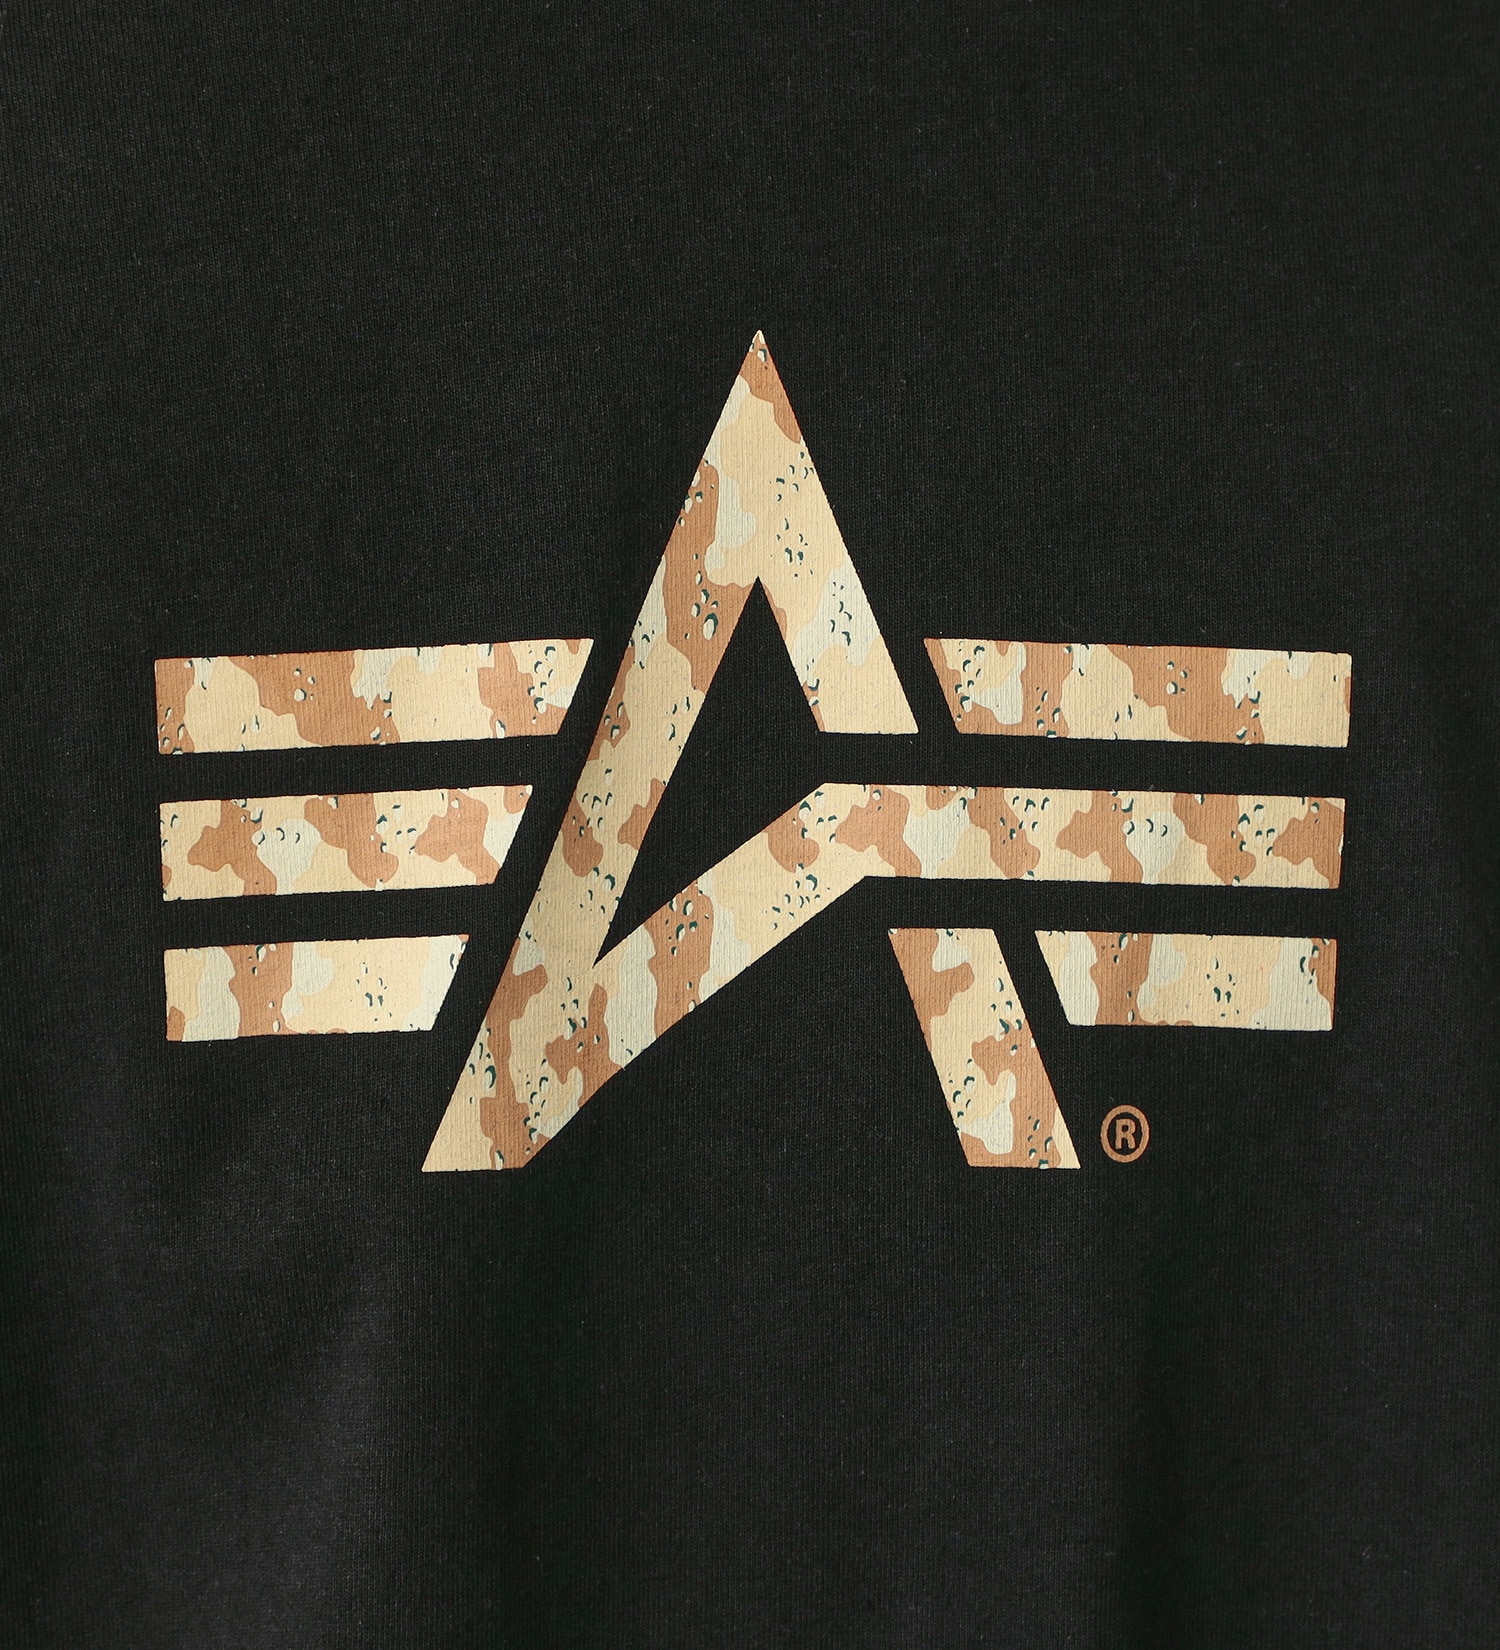 ALPHA(アルファ)の【GW SALE】Aマークプリント 長袖Tシャツ(デザートカモ柄)|トップス/Tシャツ/カットソー/メンズ|ブラック